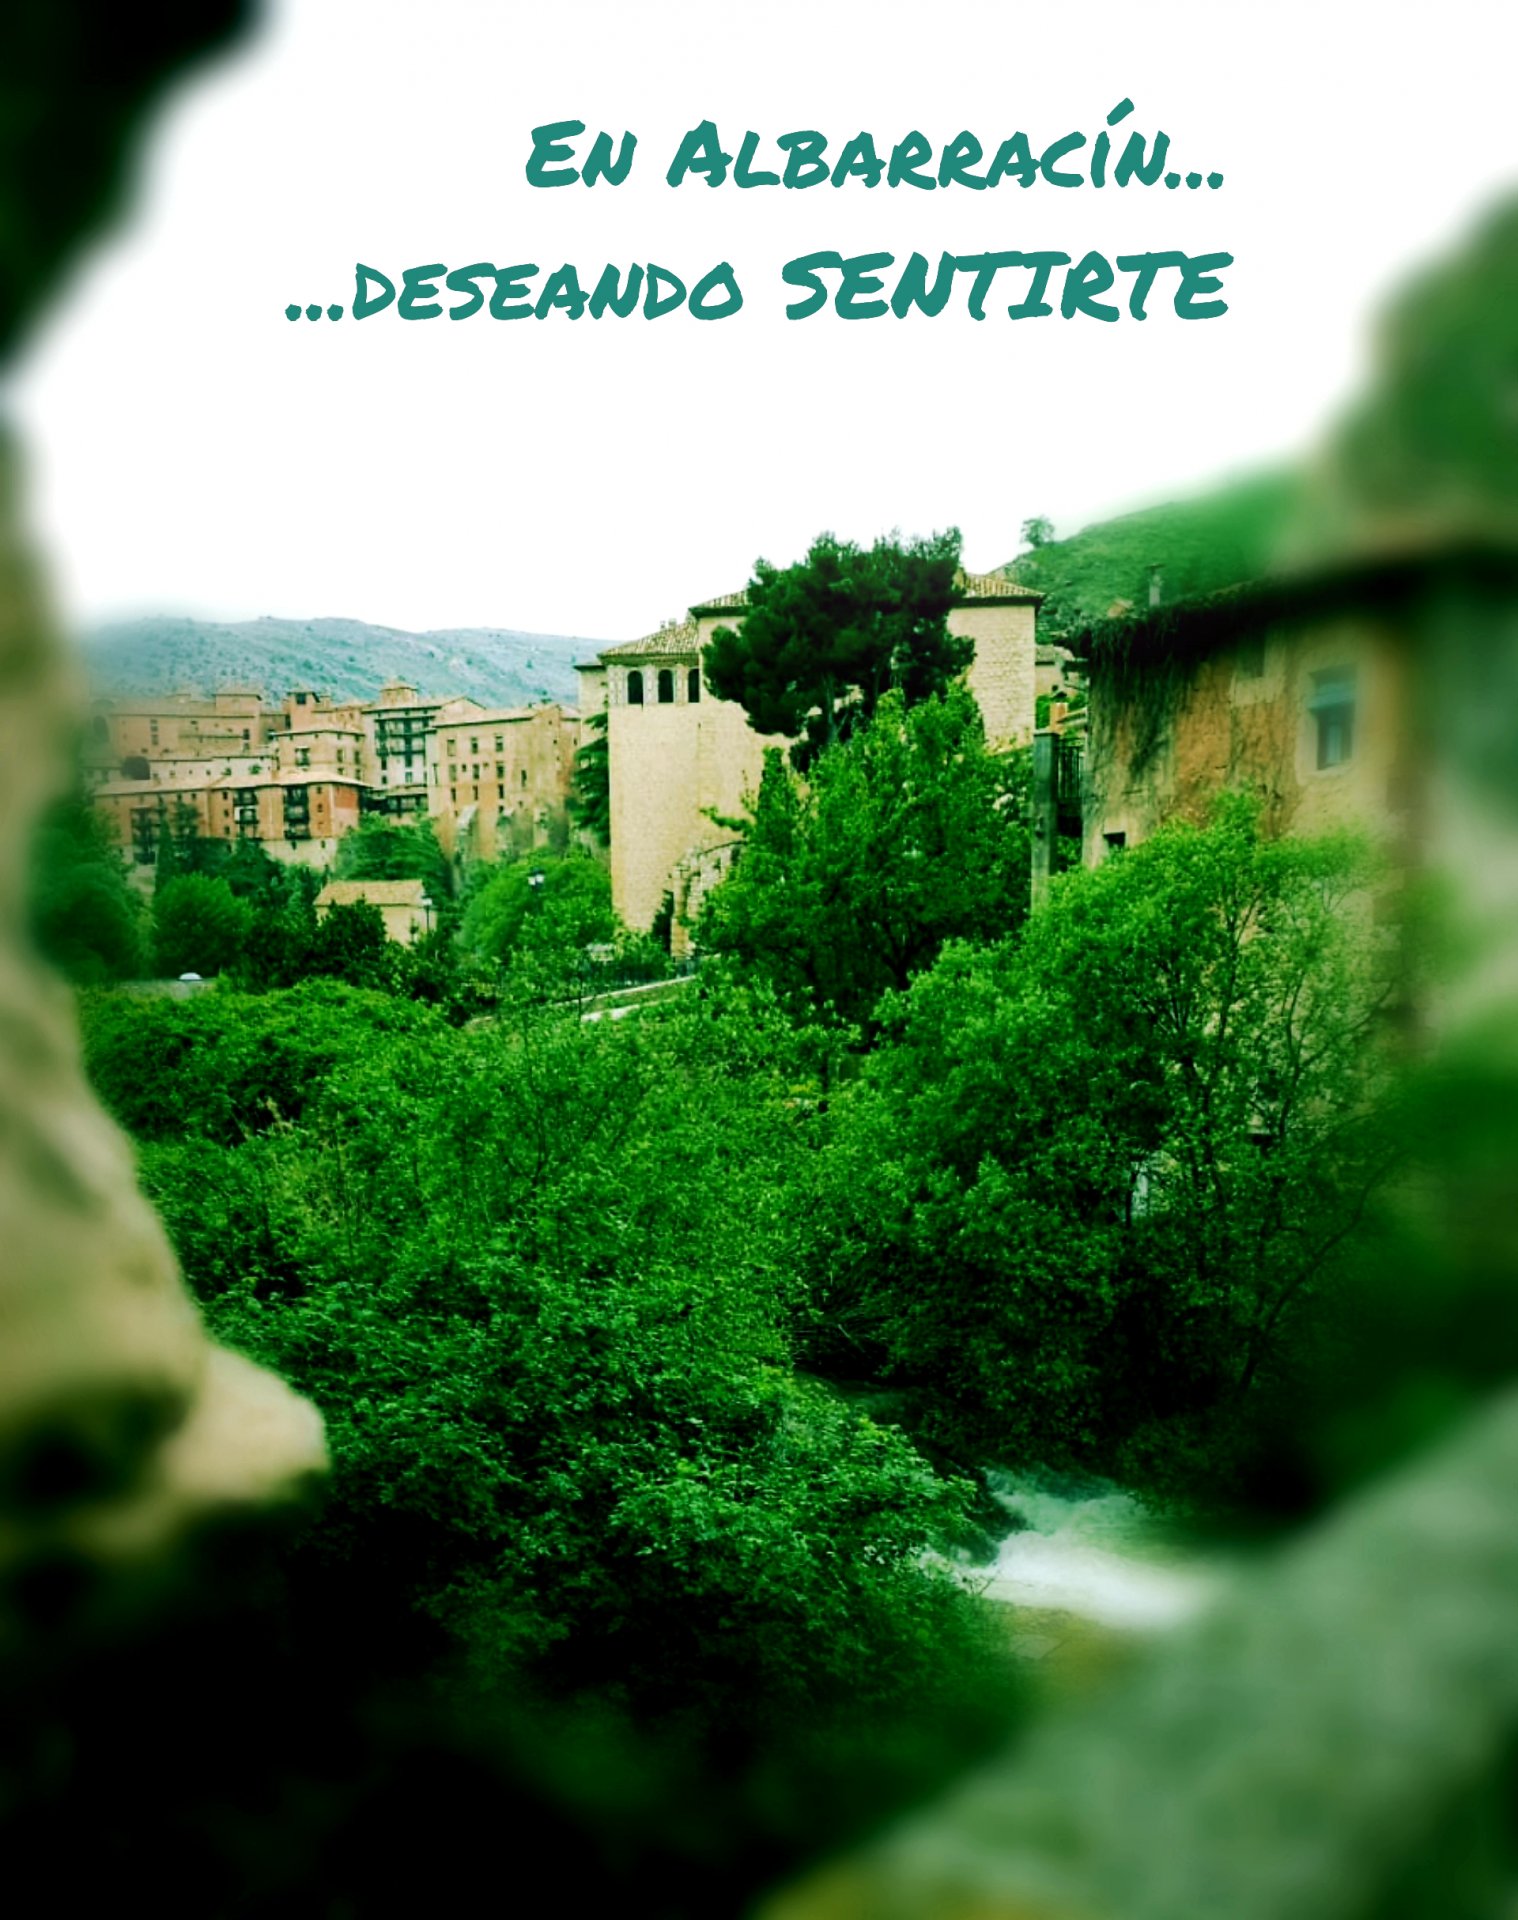 #Albarracín se ha puesto increíble para ti…#teesperaremos #cuandosepueda #conlosbrazosabiertos #visitaguiada #turismoseguro #sinaglomeraciones #algodiferente #turismorural #disfrutaremosjuntosyseguros